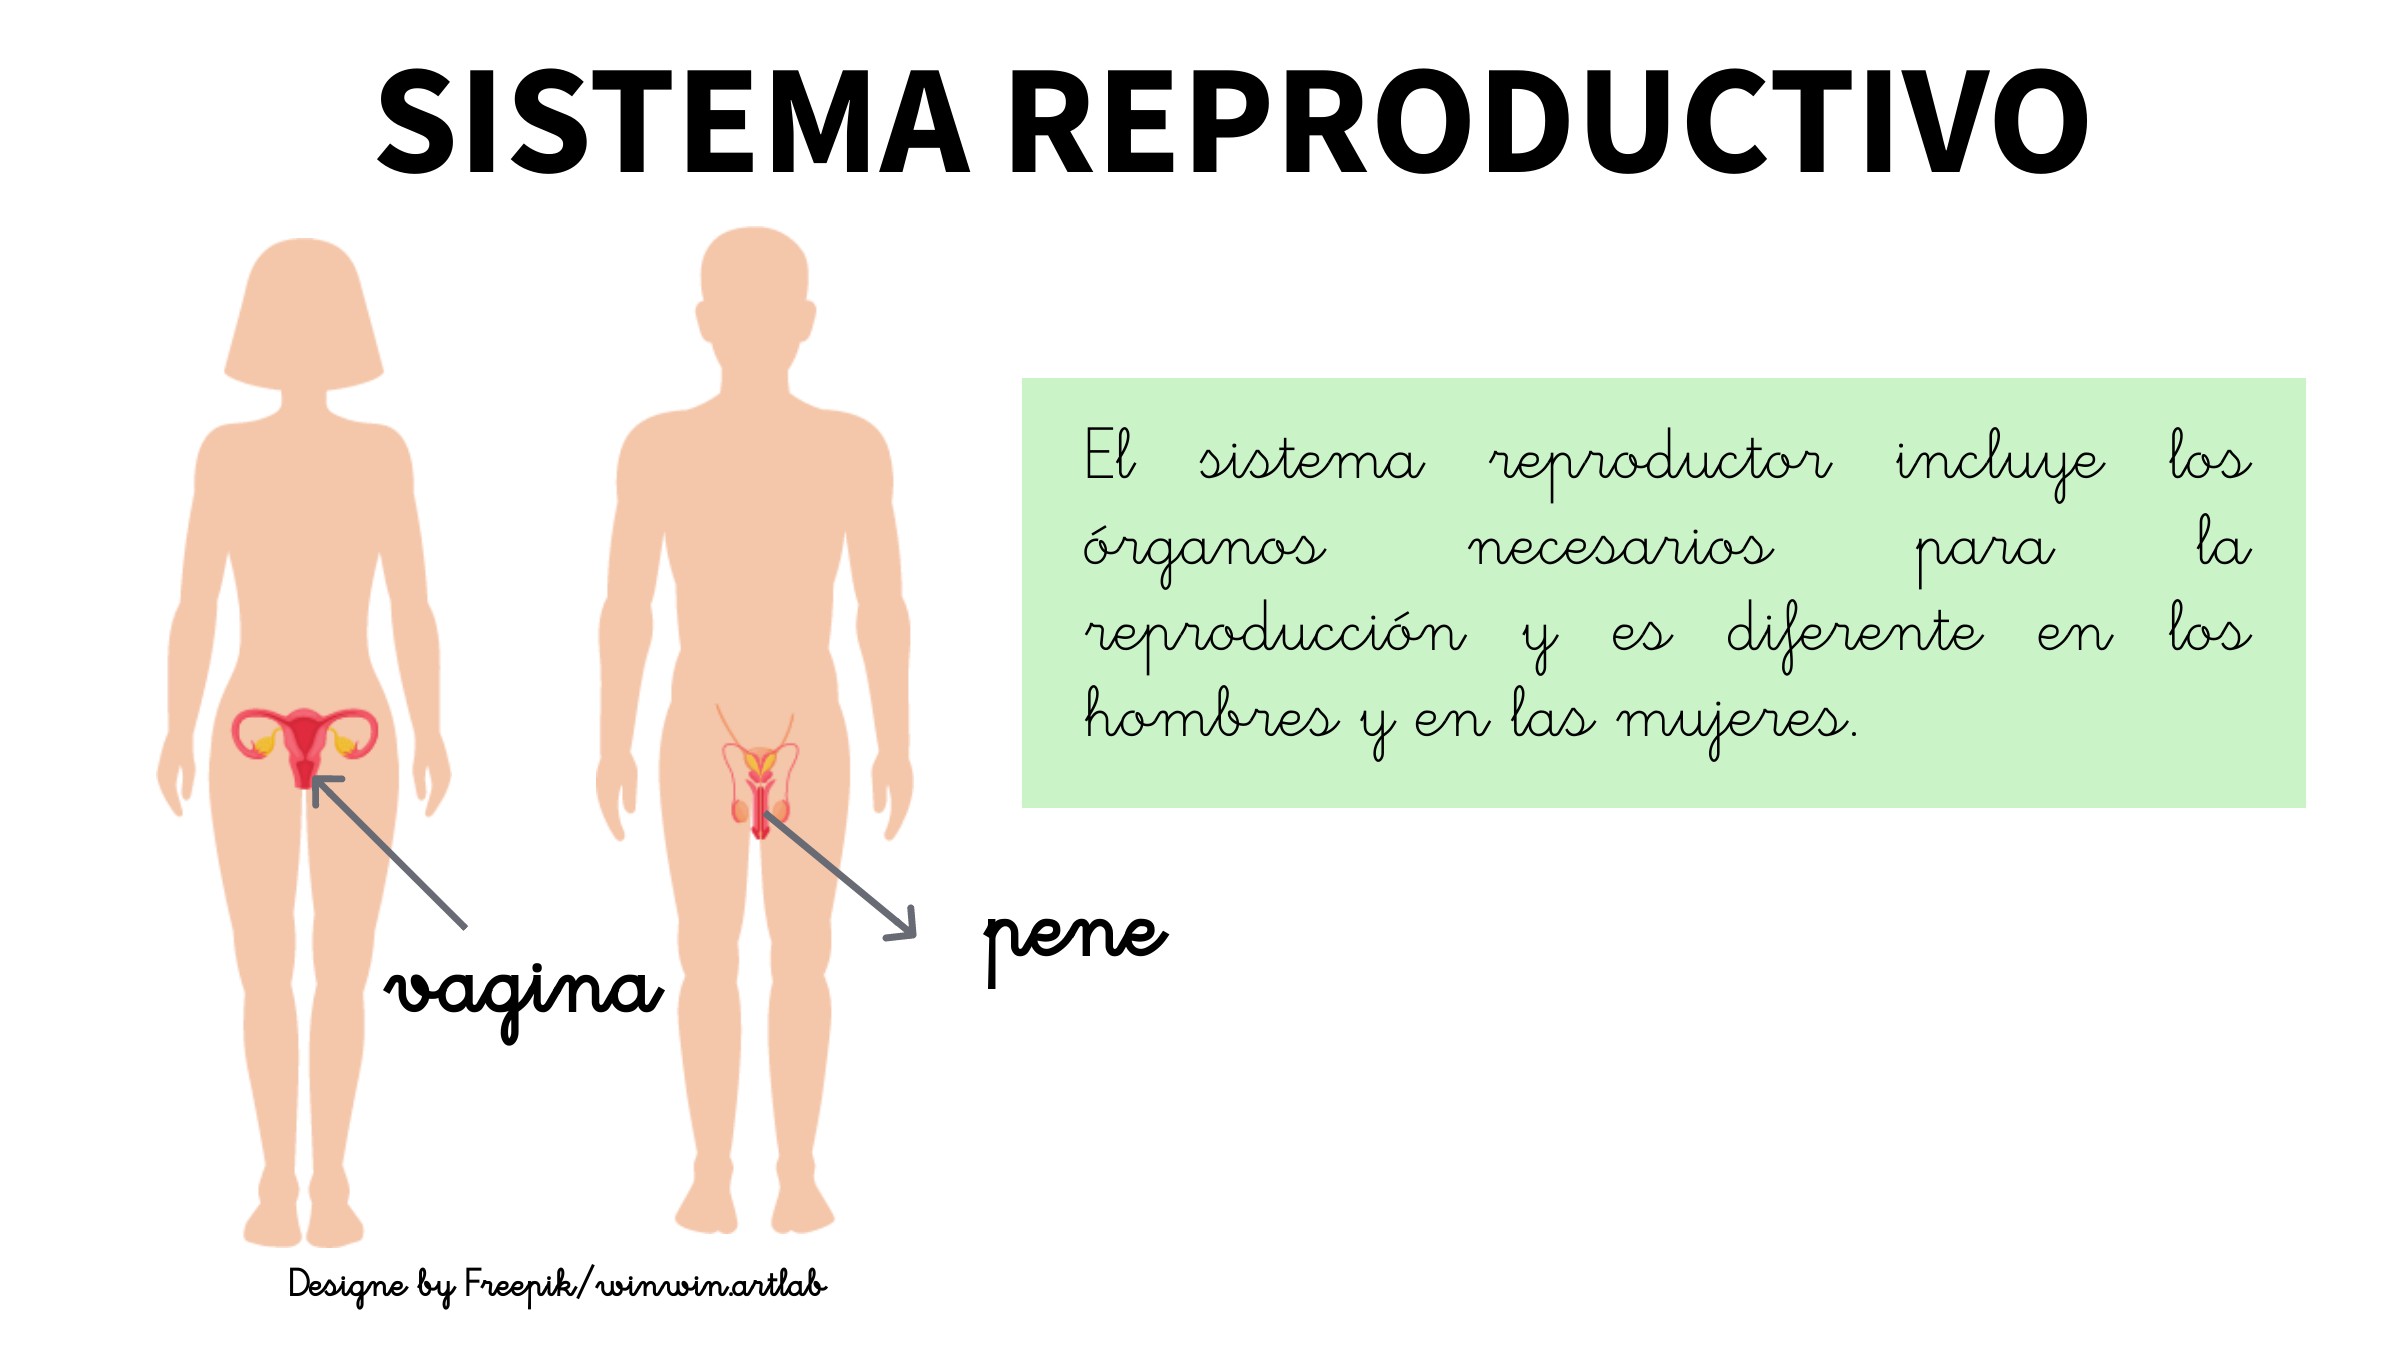 Breve descripción del sistema de reproducción